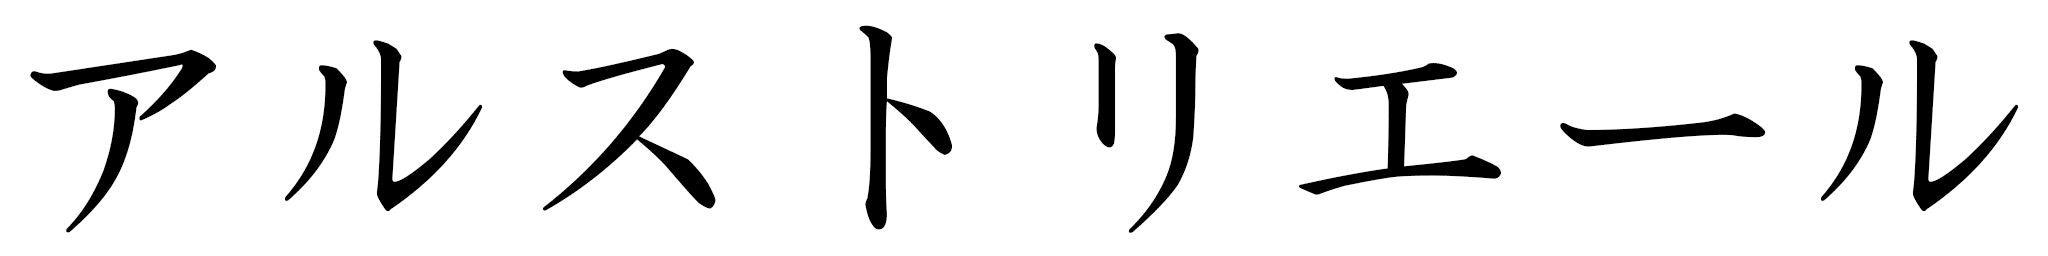 Alustriel in Japanese